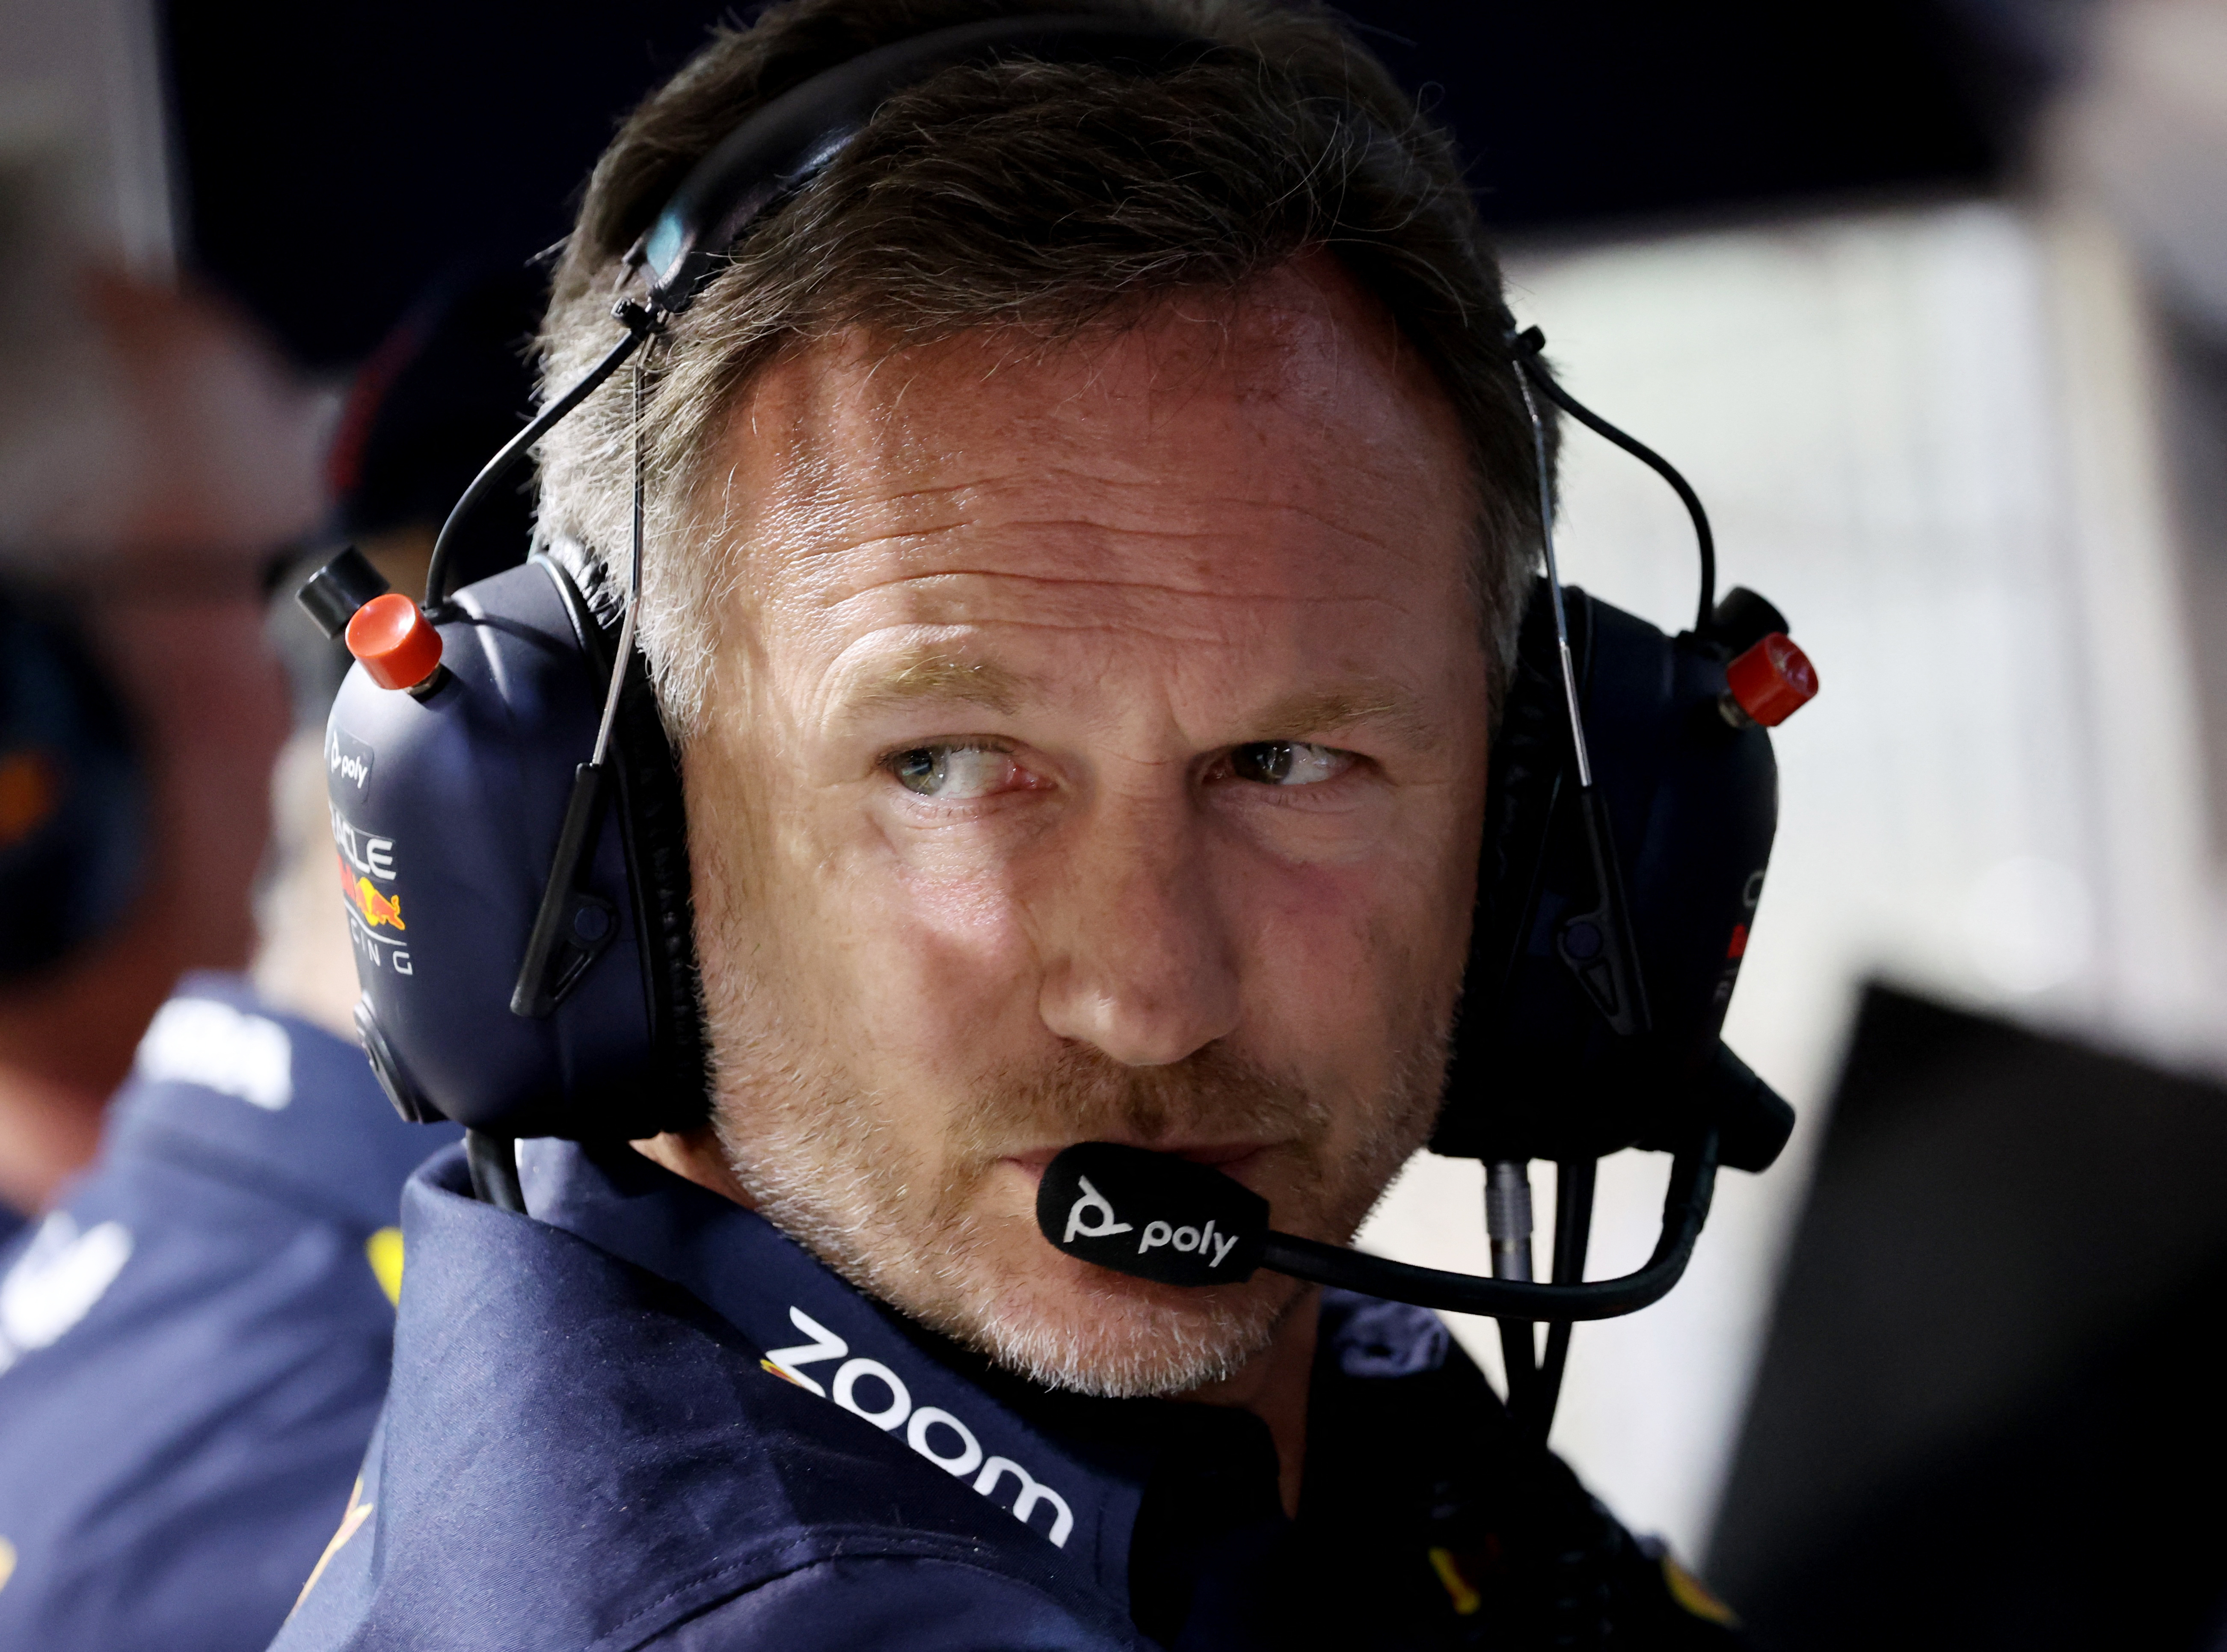 Nuevo capítulo de la guerra entre Red Bull y Aston Martin en la Fórmula 1: “Es halagador ver el parecido de ese coche con el nuestro” 